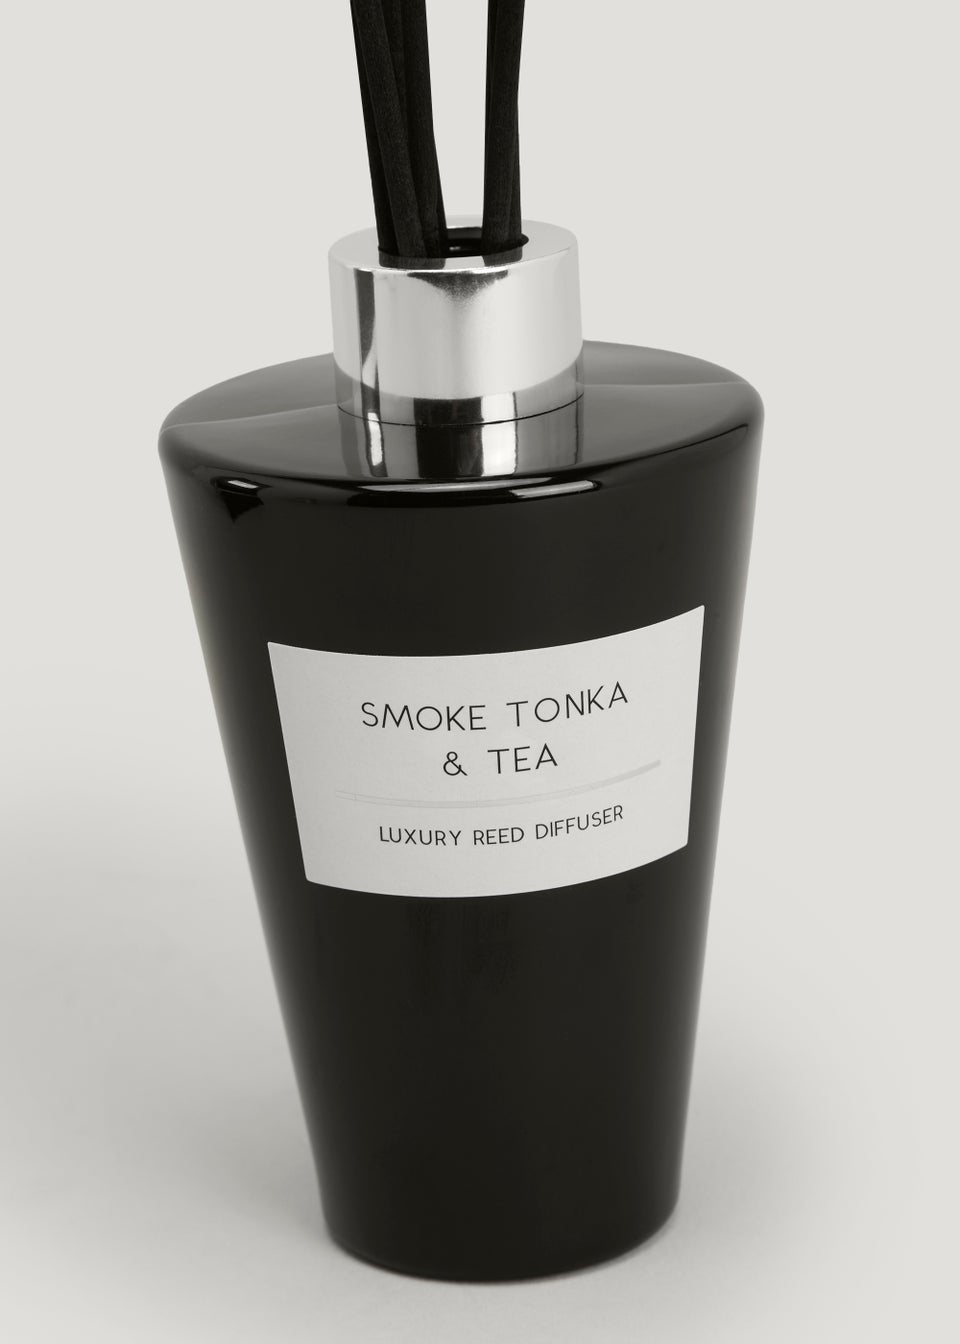 Smoke Tonka & Tea Reed Diffuser (180ml)